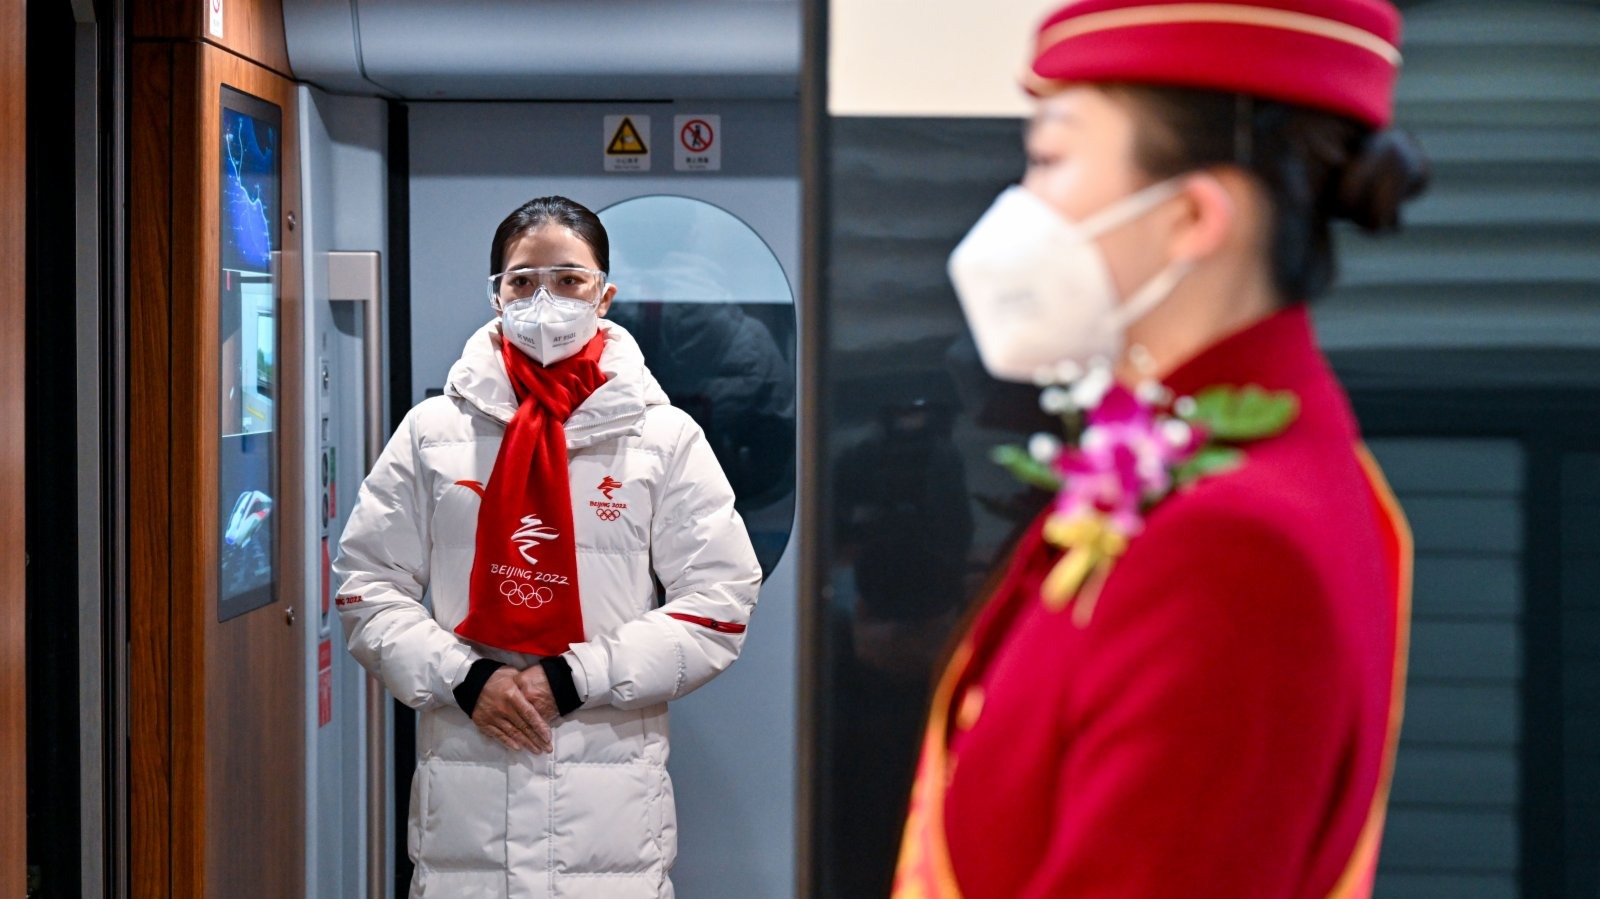 26歲的吳一凡是京張高鐵「雪之夢」乘務組中的一員。這個平均年齡25歲的乘務組，主要值乘北京北至太子城、北京北至延慶的復興號智能動車組列車，除了提供日常乘務服務，還承擔著京張高鐵智能動車組的外語講解服務。